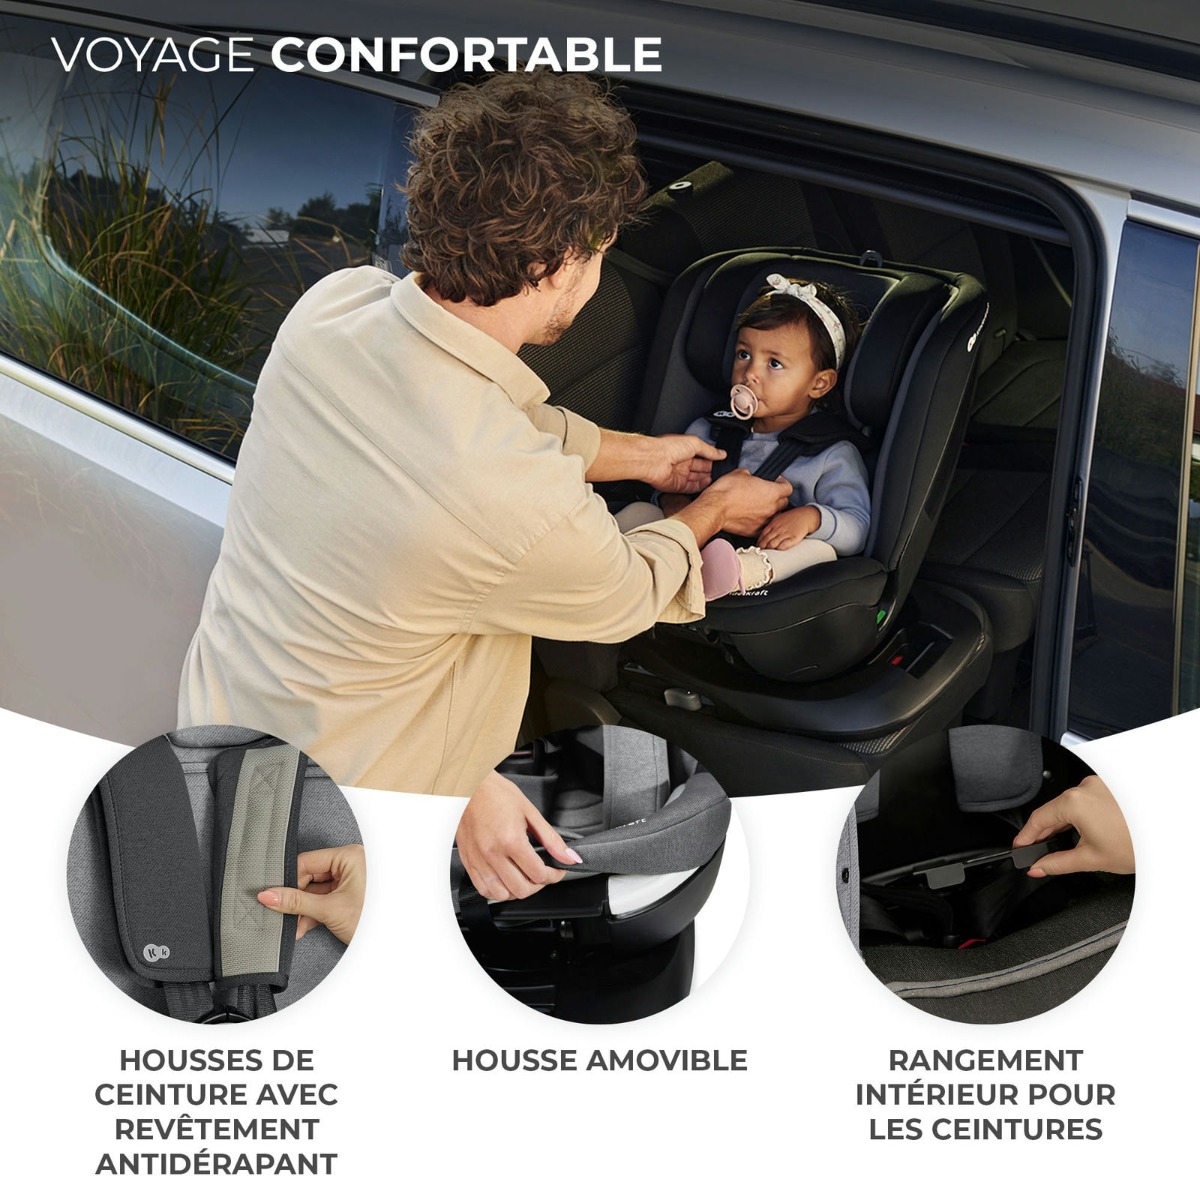 Housses de siège de voiture avec ceinture de sécurité intégrée